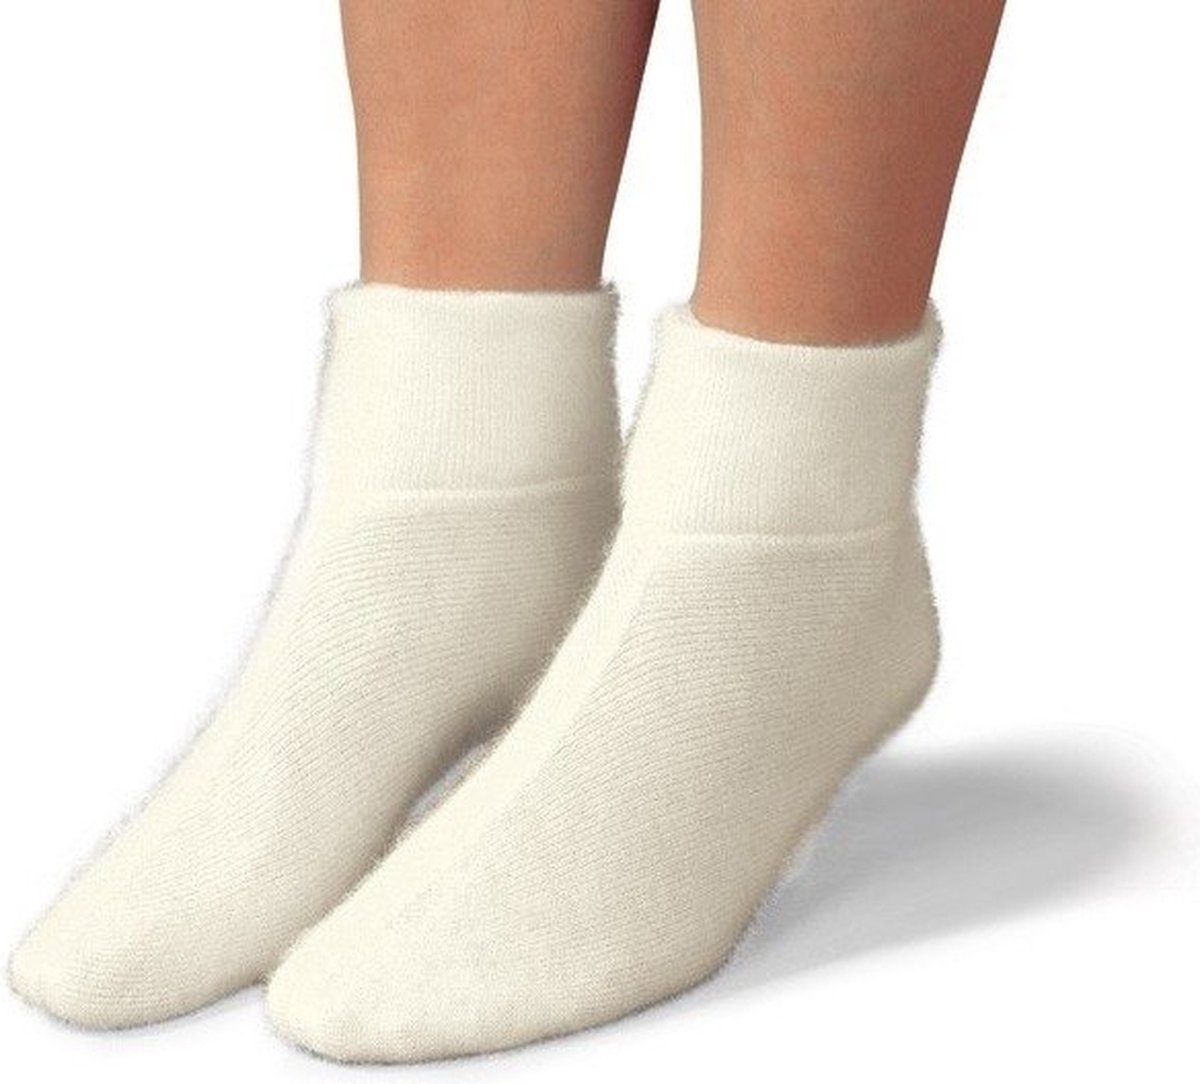 Eureka - Merino wollen sokken - S9 - Unisex - Ecru - 43/45 - In meerdere kleuren en maten beschikbaar